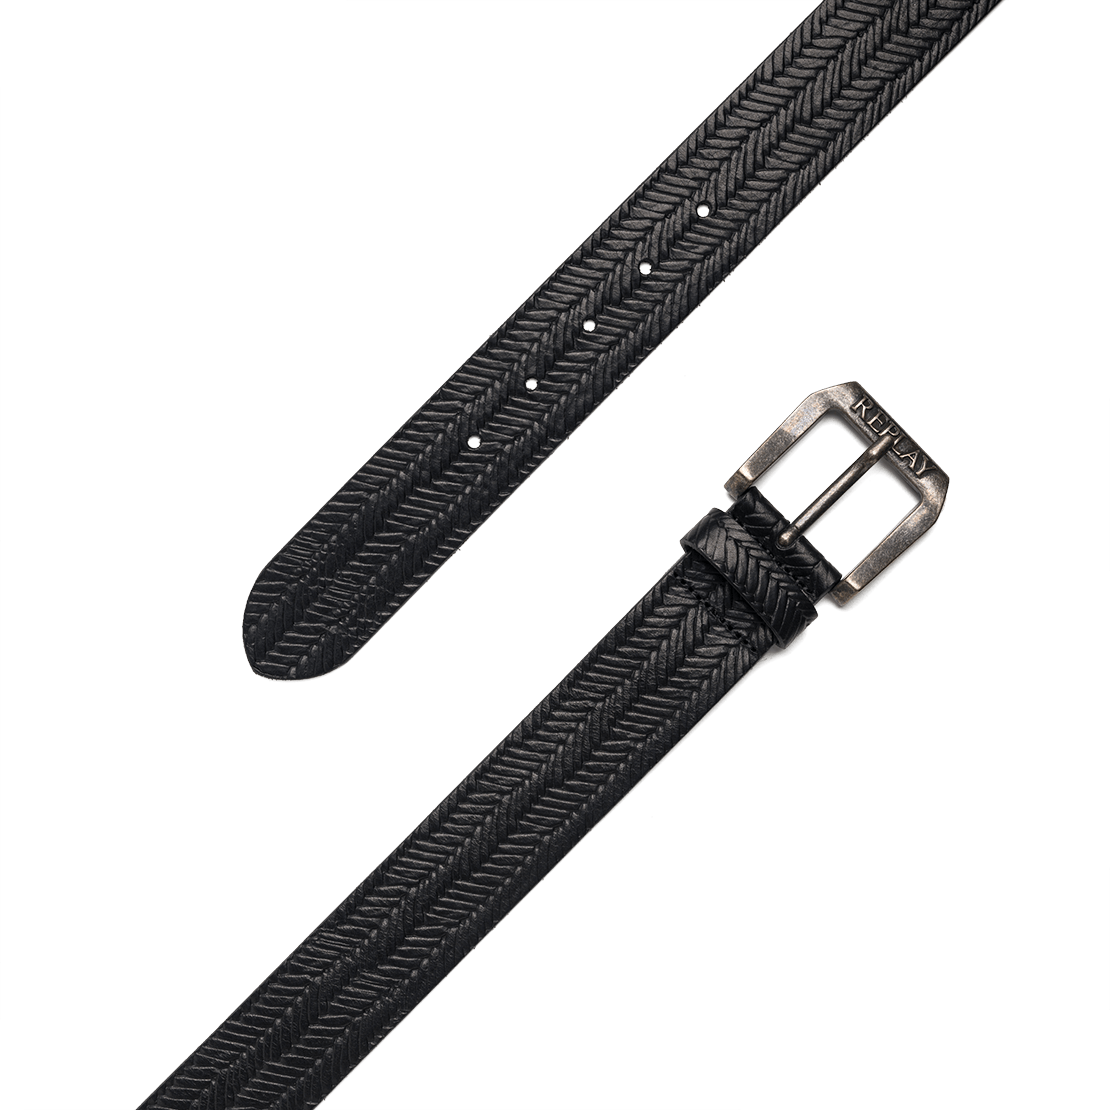 Belt In Weaved Leather